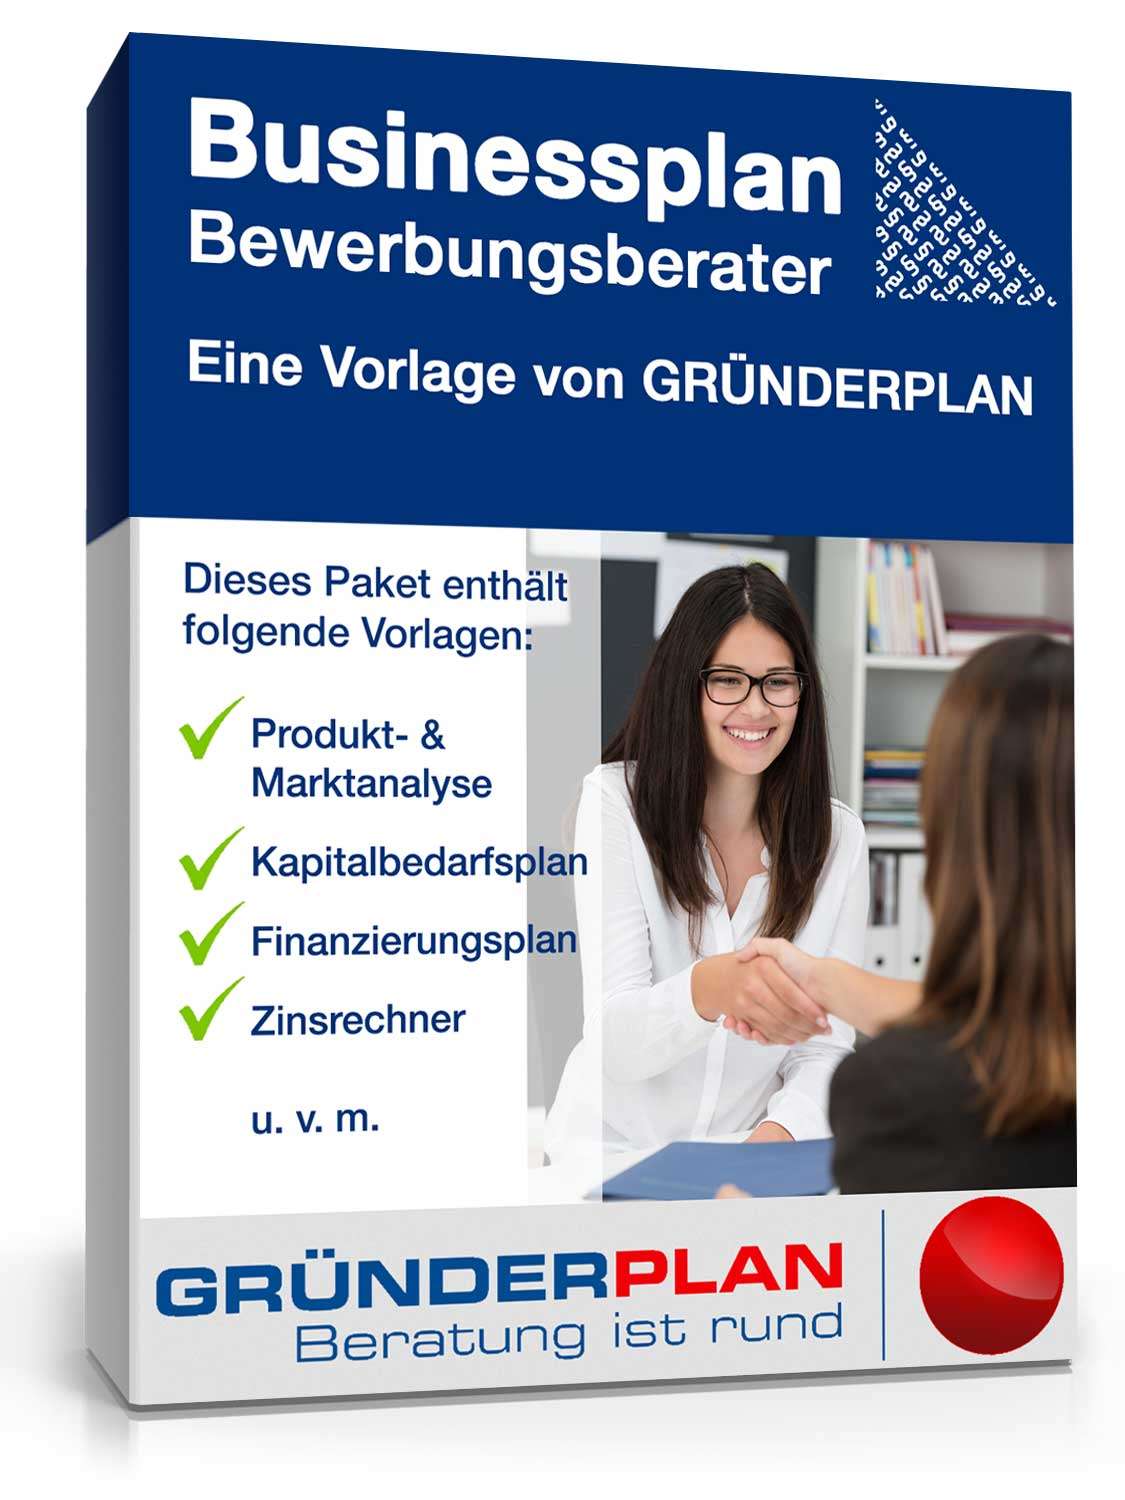 Hauptbild des Produkts: Businessplan Bewerbungsberater von Gründerplan